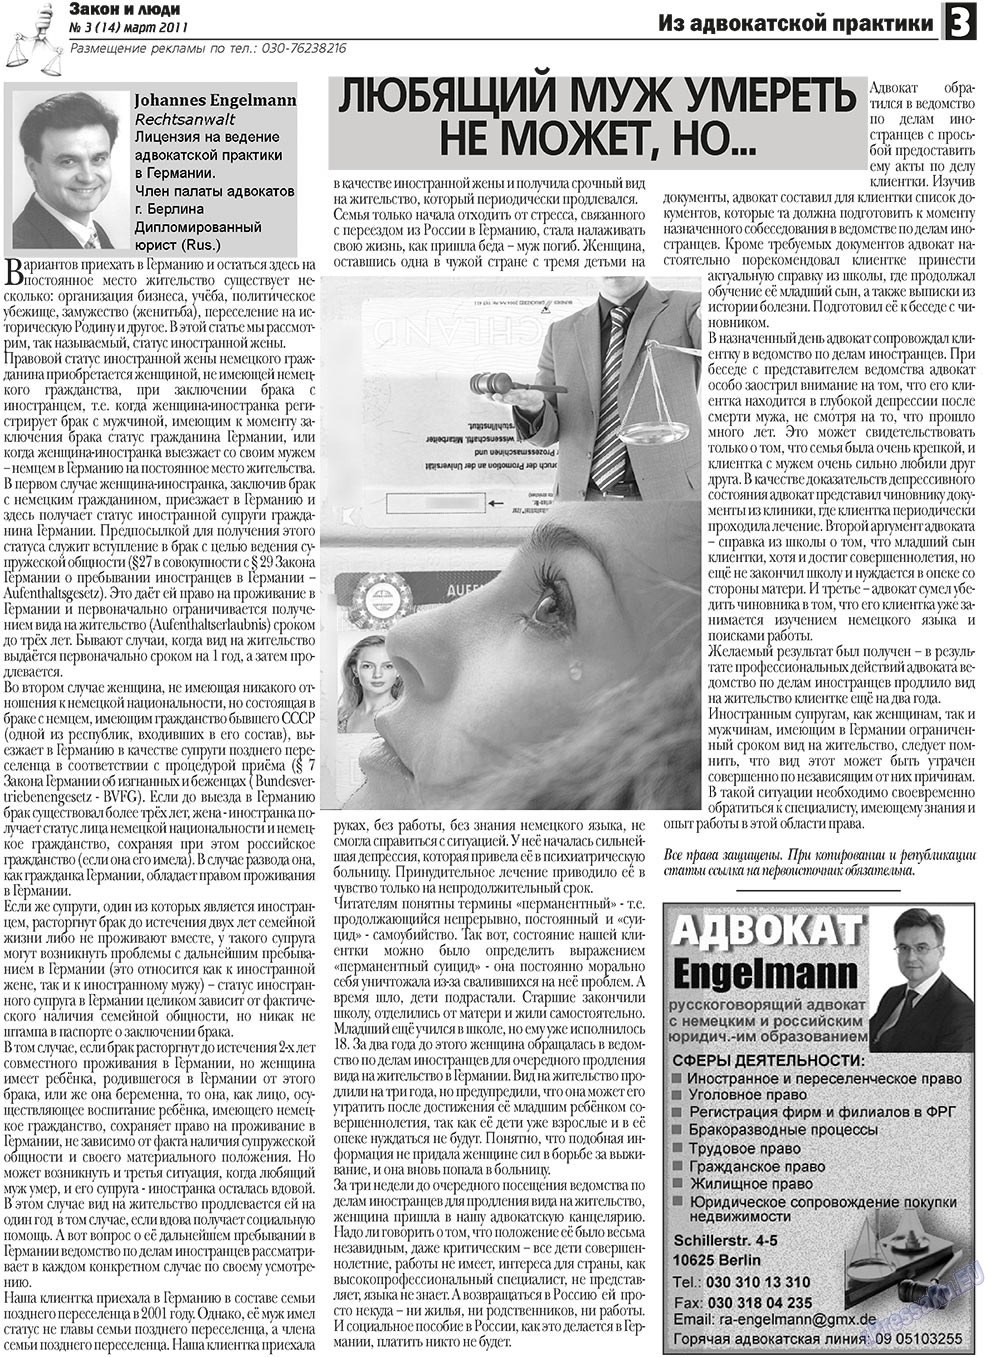 Закон и люди, газета. 2011 №3 стр.3